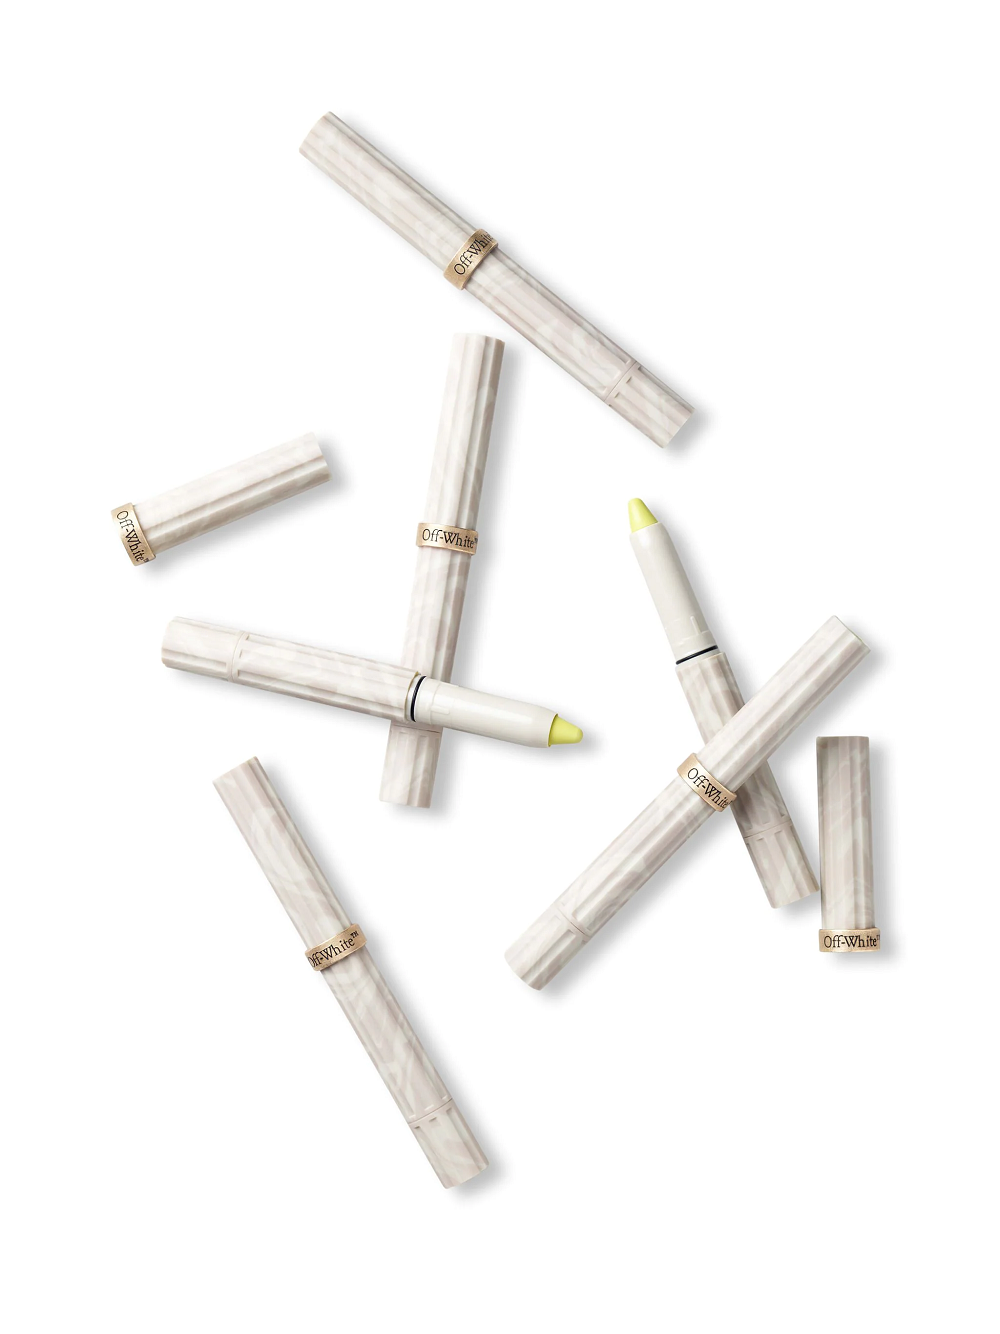 Off-white Imprint Zone Pencil In White